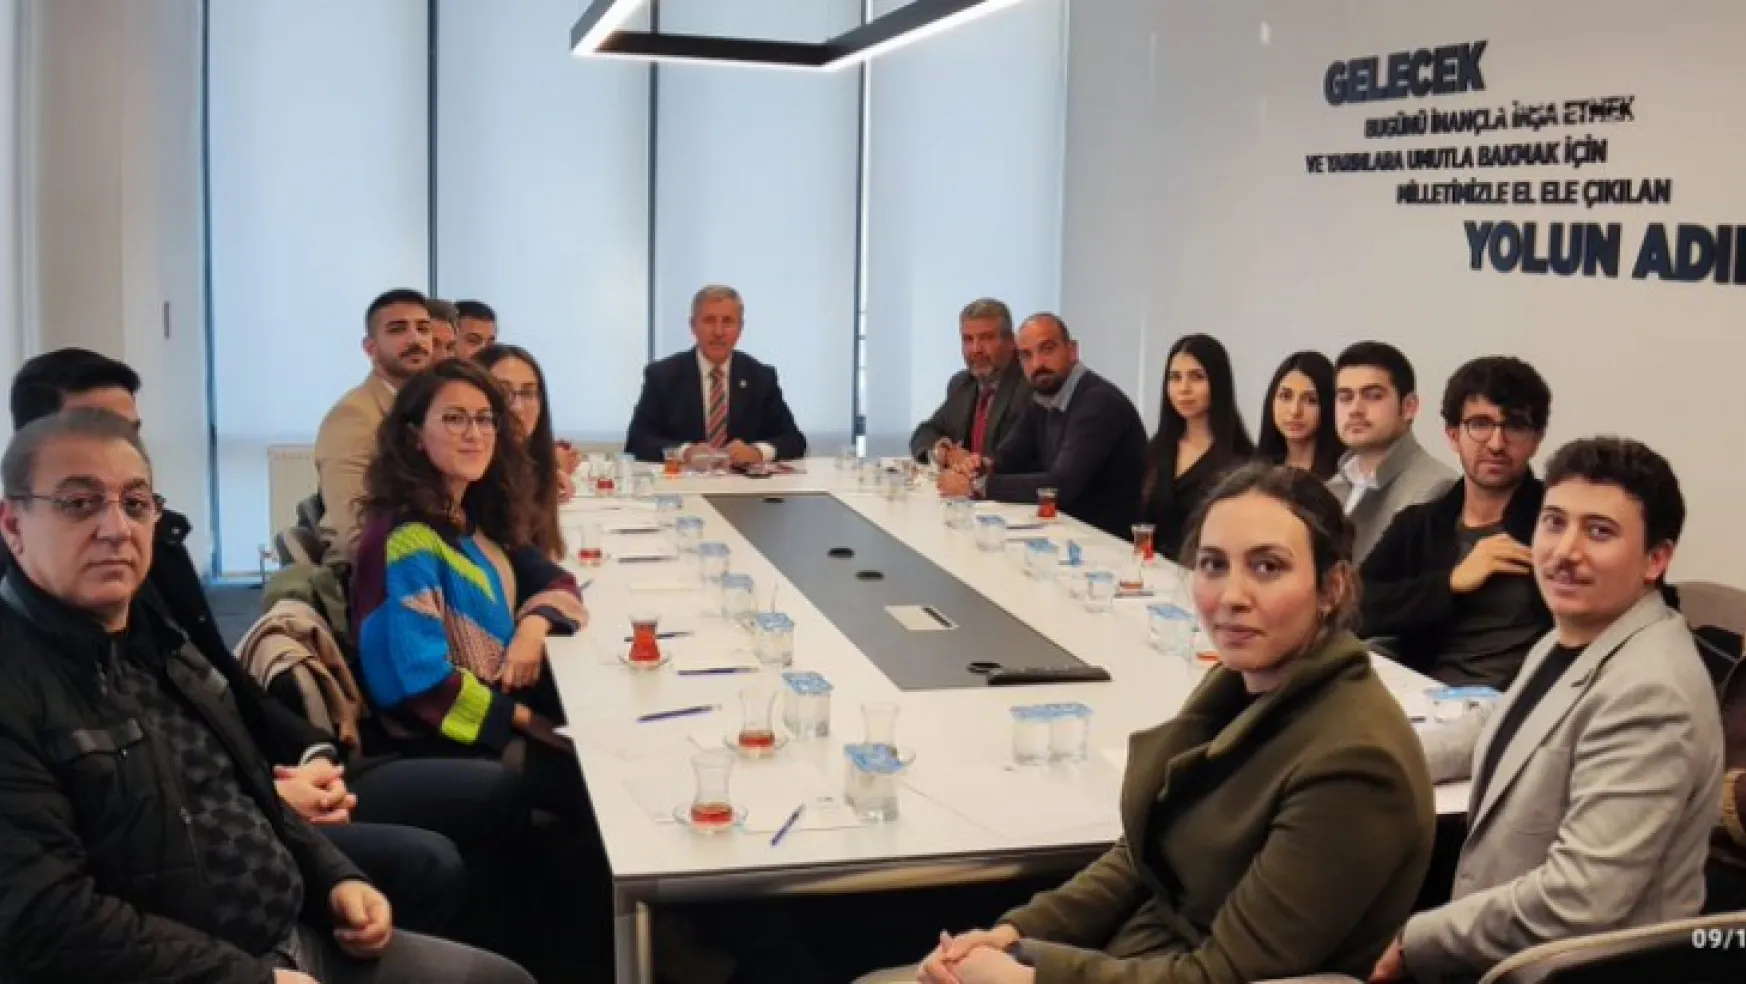 Atama Bekleyen Mimar Ve Mühendislerden Gelecek Partisine Ziyaret